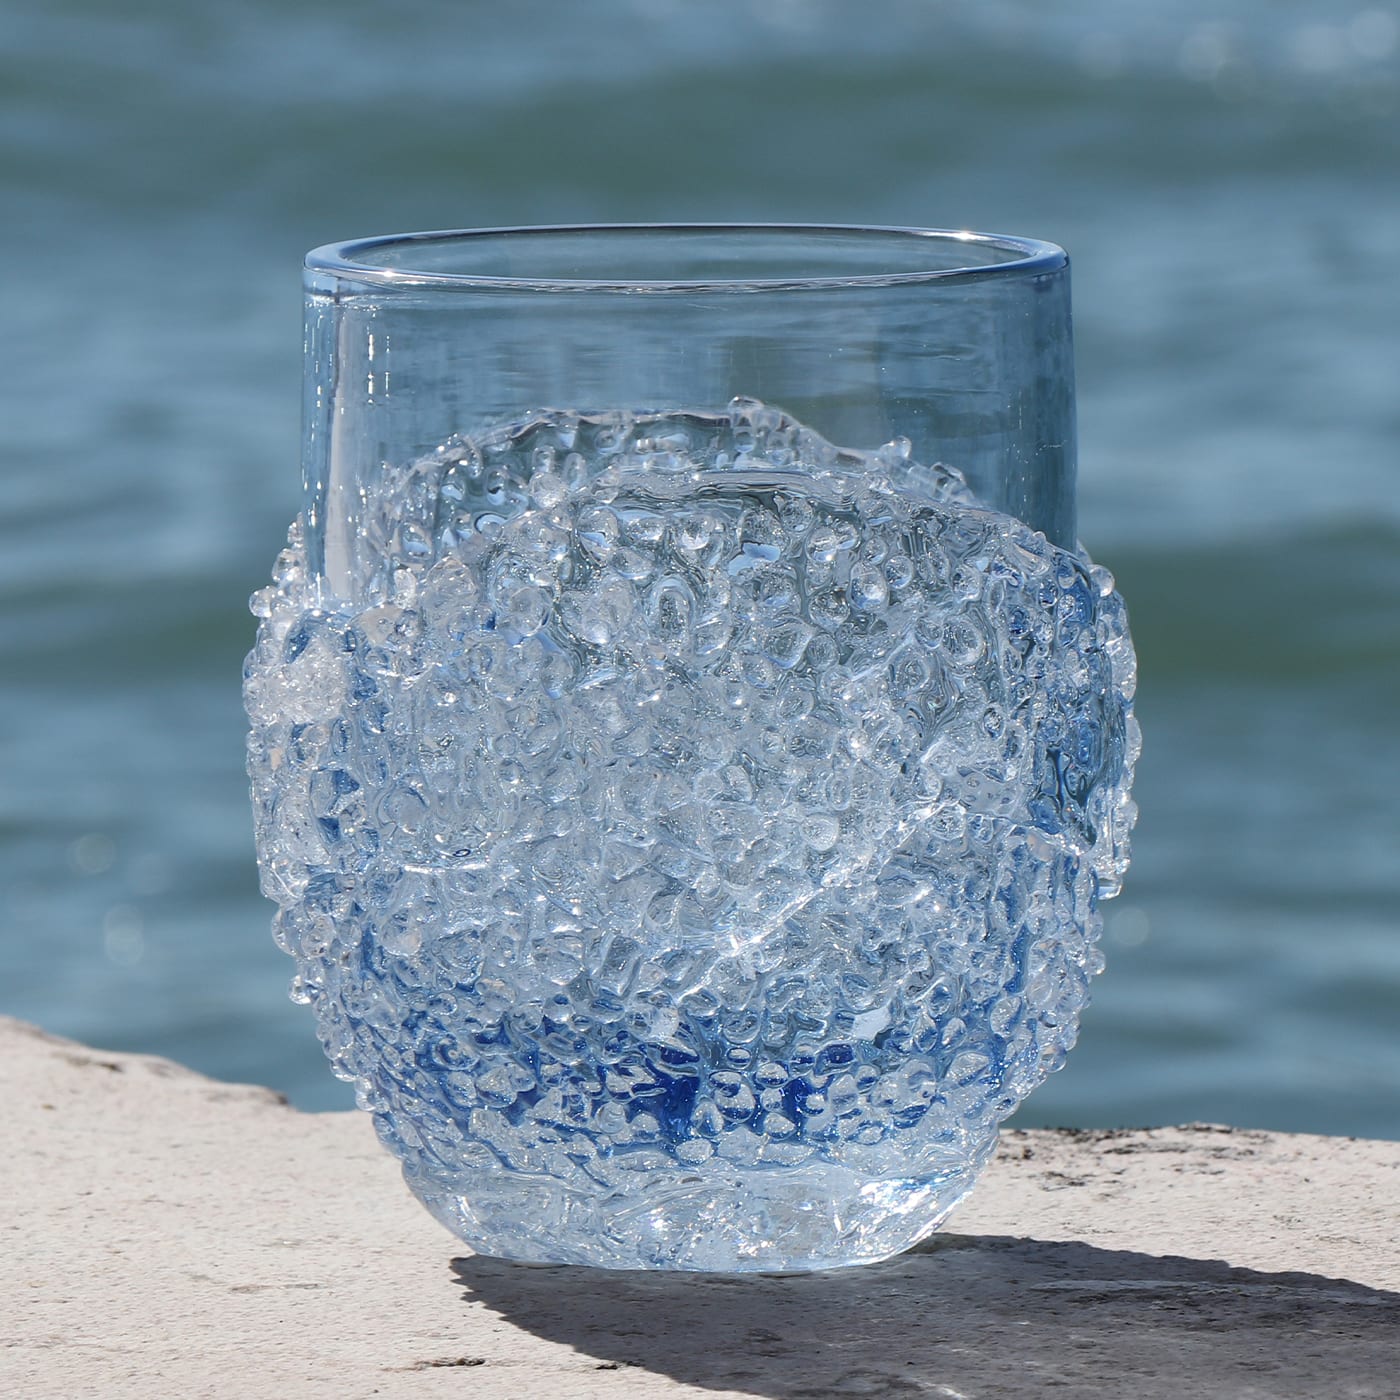 Ghiaccio Bluino Vase - Micheluzzi Glass